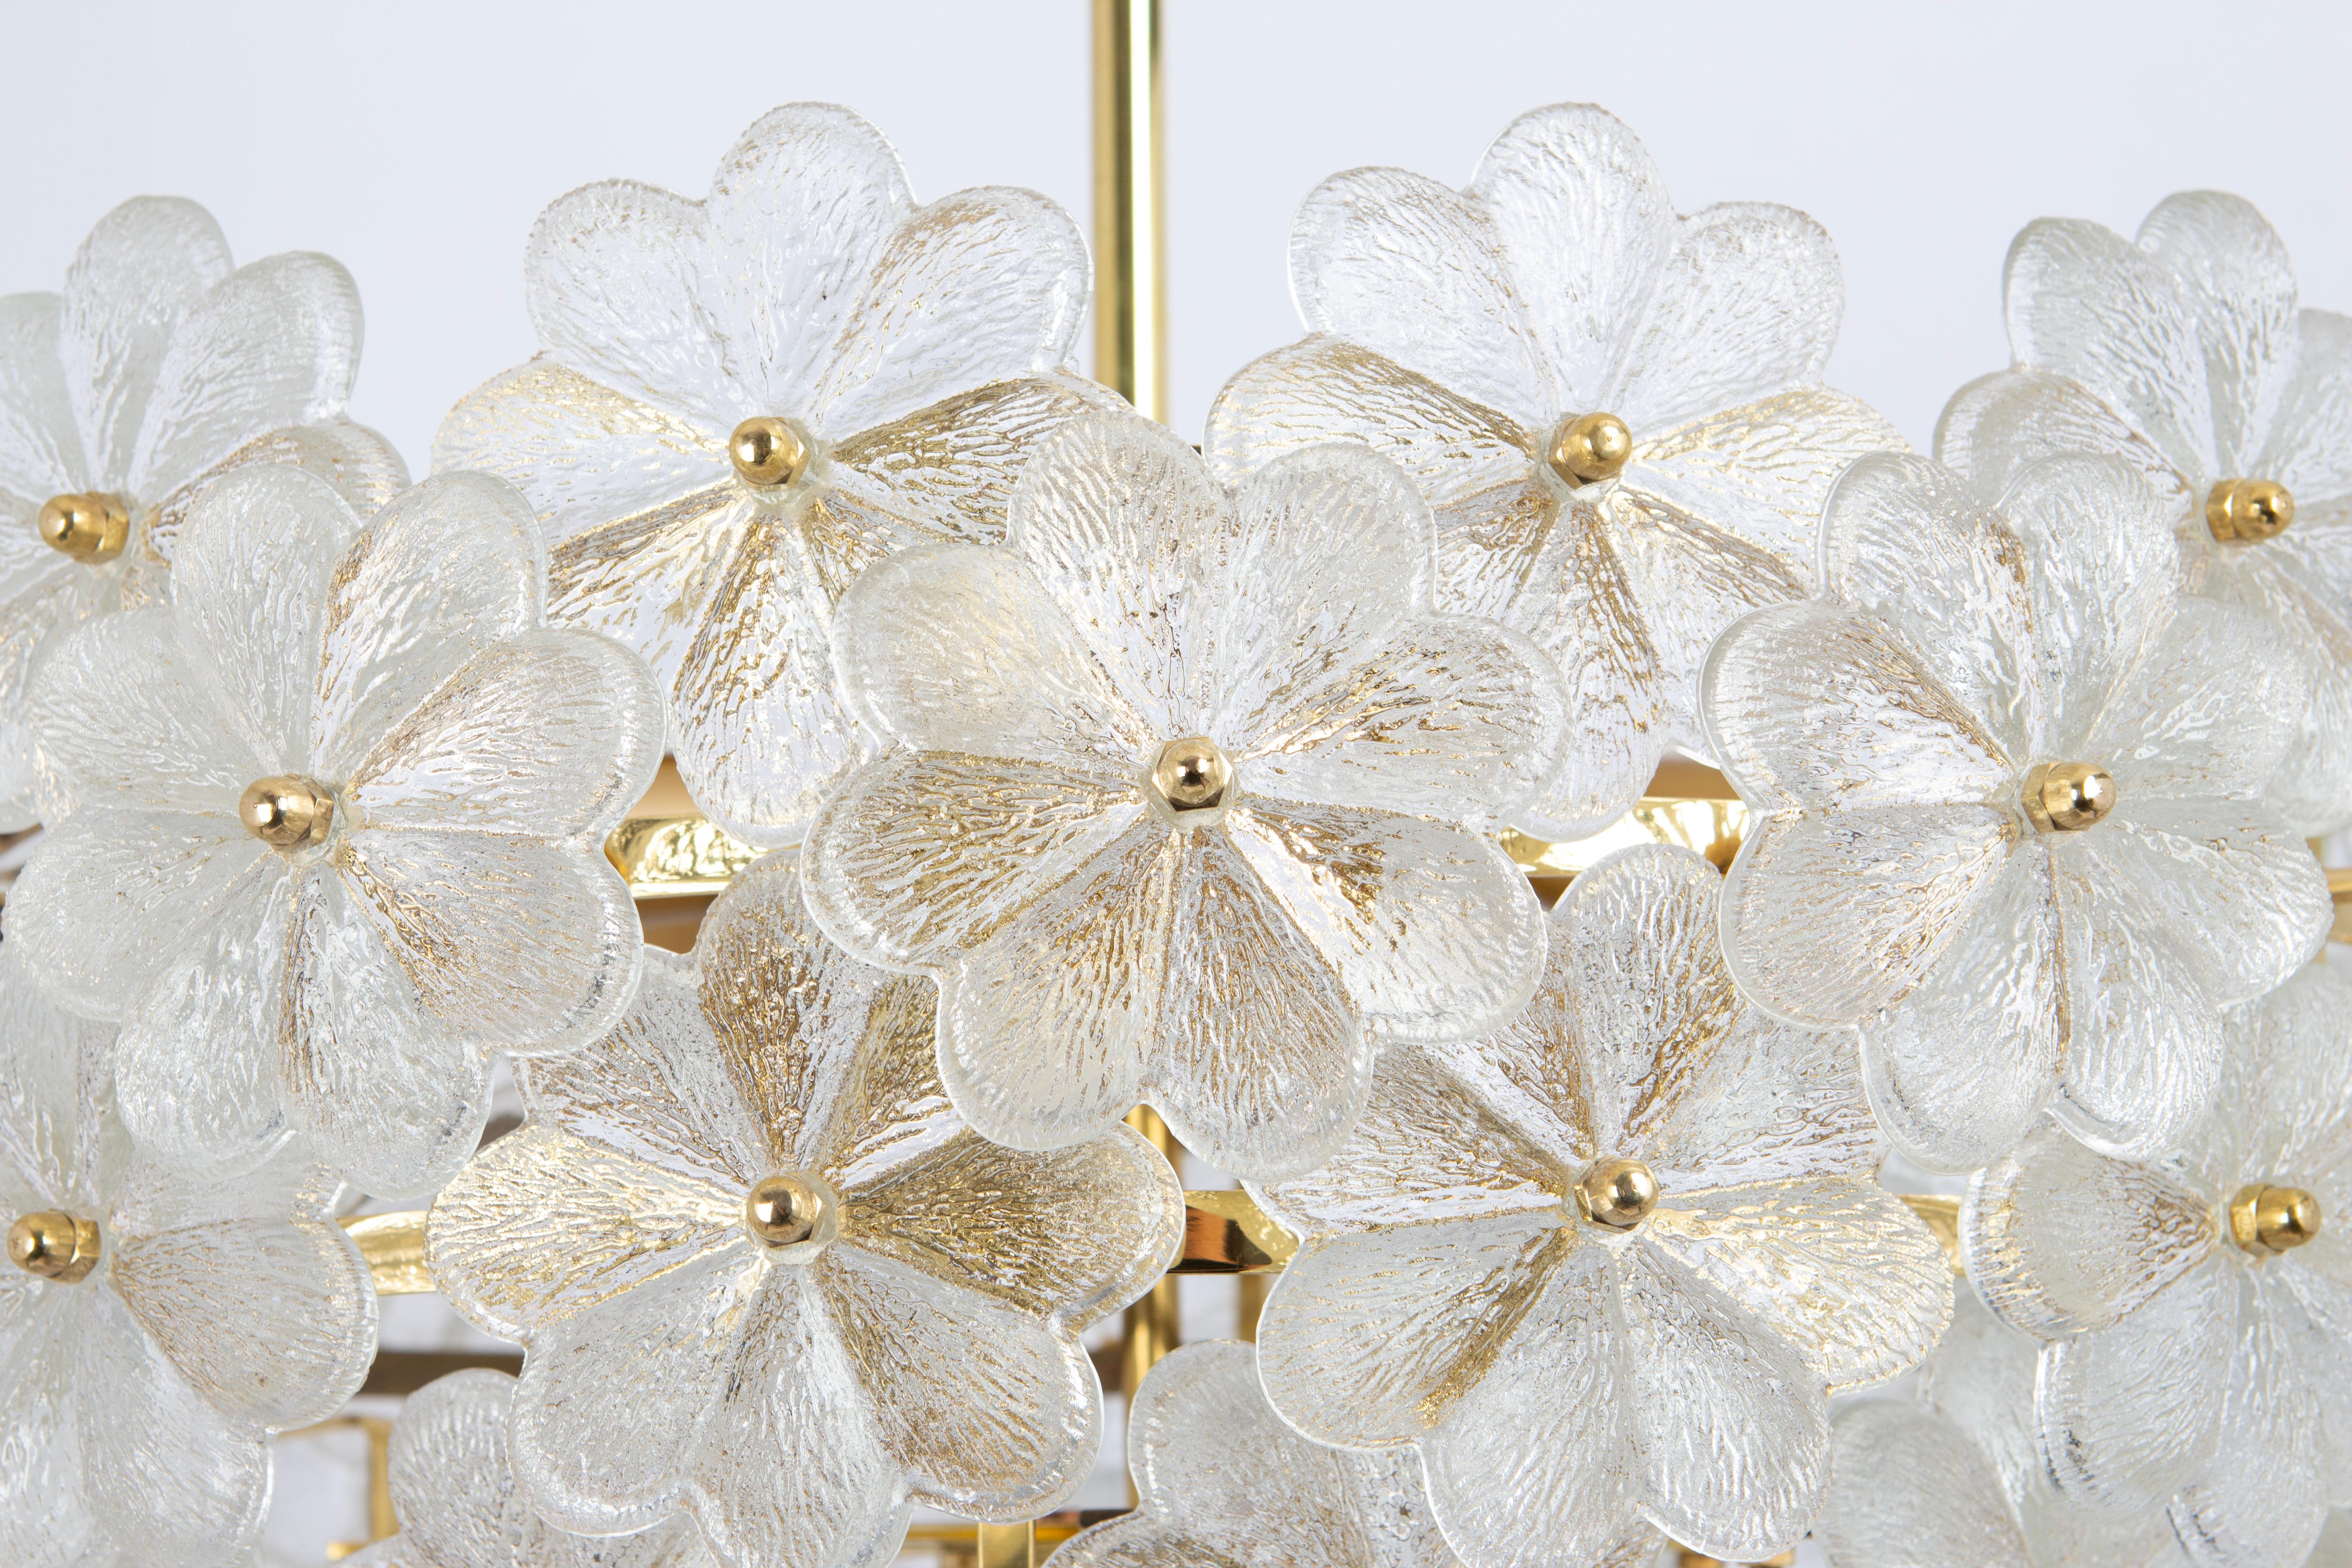 Großer atemberaubender Kronleuchter mit vielen Murano Blumen aus Kristallglas auf einem Messingrahmen, hergestellt von Ernst Palme in Deutschland, 1970er Jahre.
Hochwertig und in sehr gutem Zustand. Gereinigt, gut verkabelt und einsatzbereit. 

Für